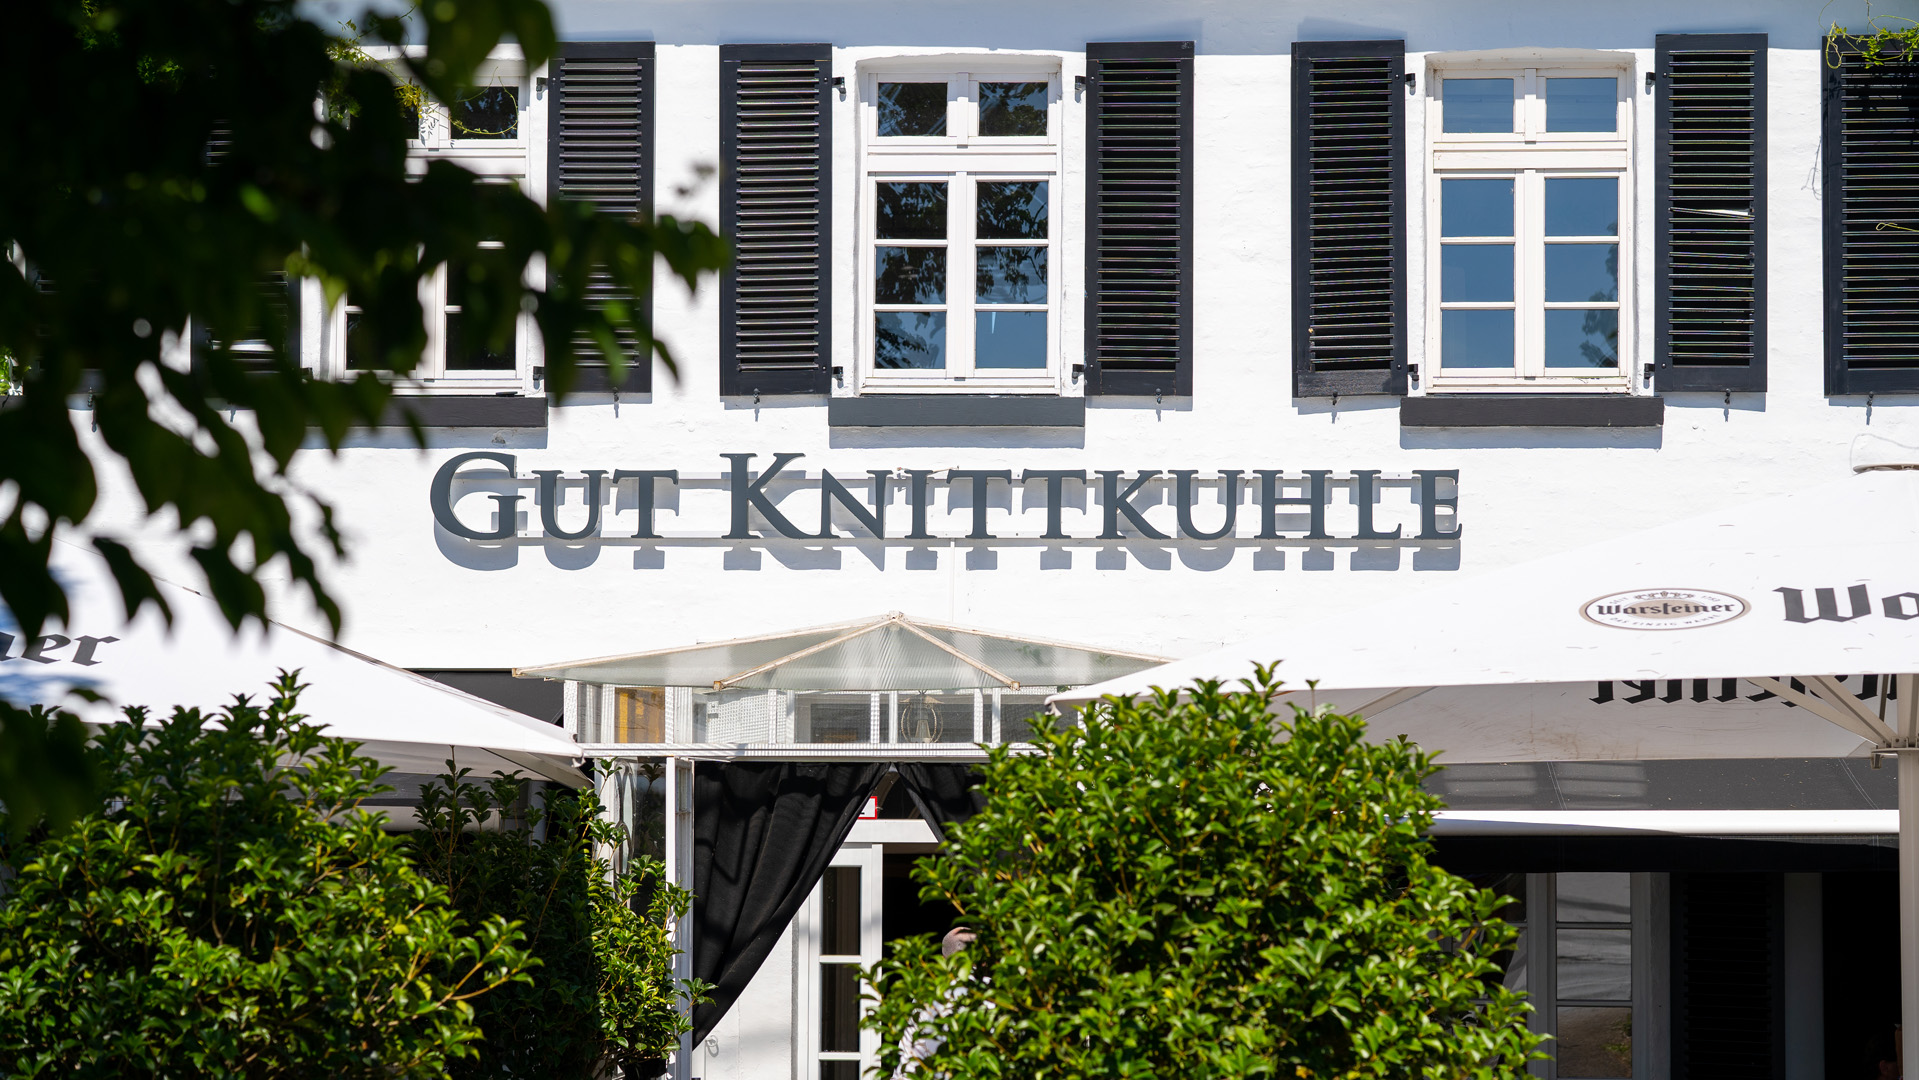 Gut-Knittkuhle-Hochzeiten-Veranstaltungen-Events-Duesseldorf-33